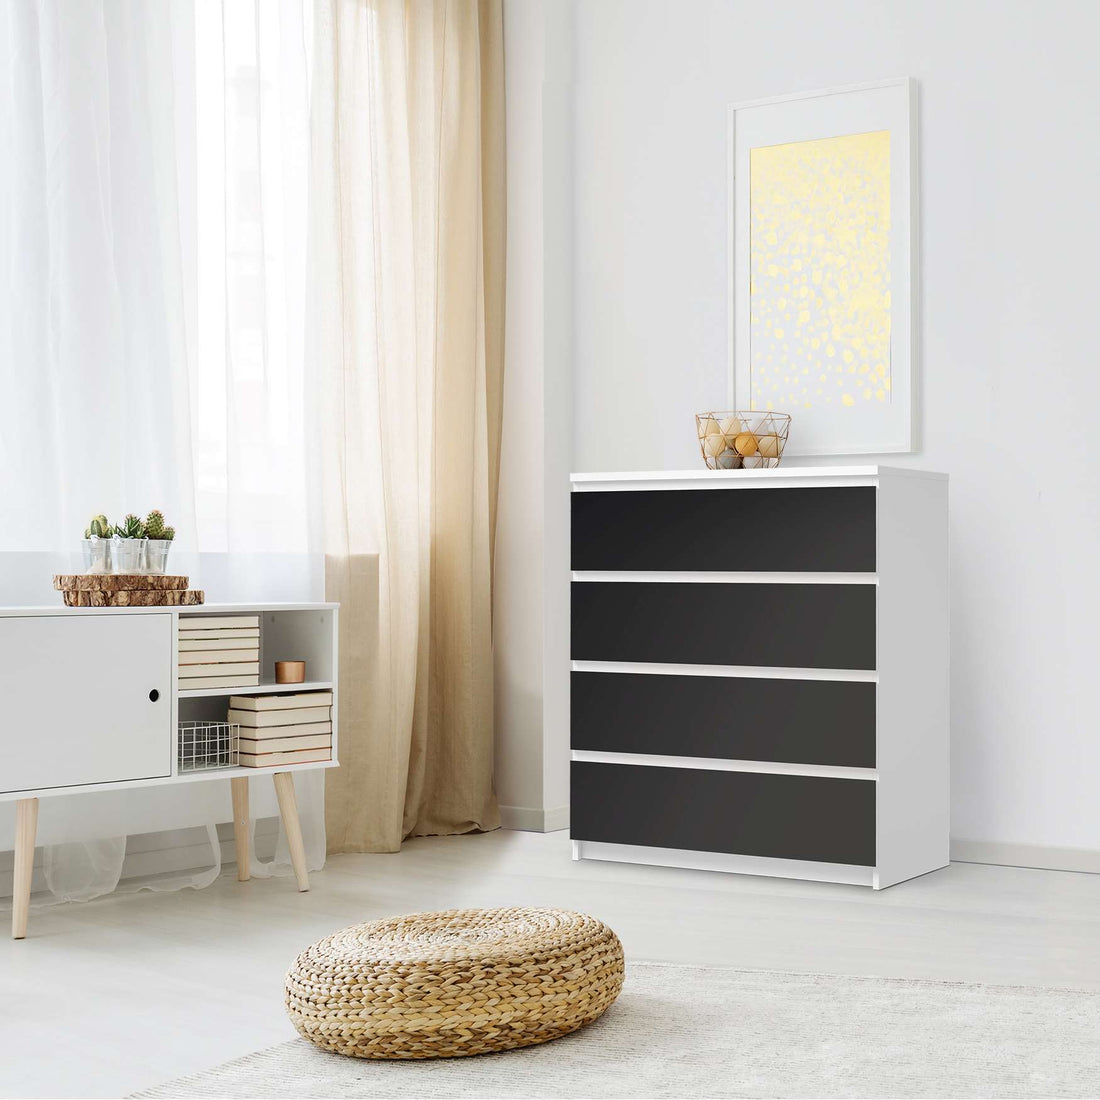 Folie für Möbel Schwarz - IKEA Malm Kommode 4 Schubladen - Schlafzimmer